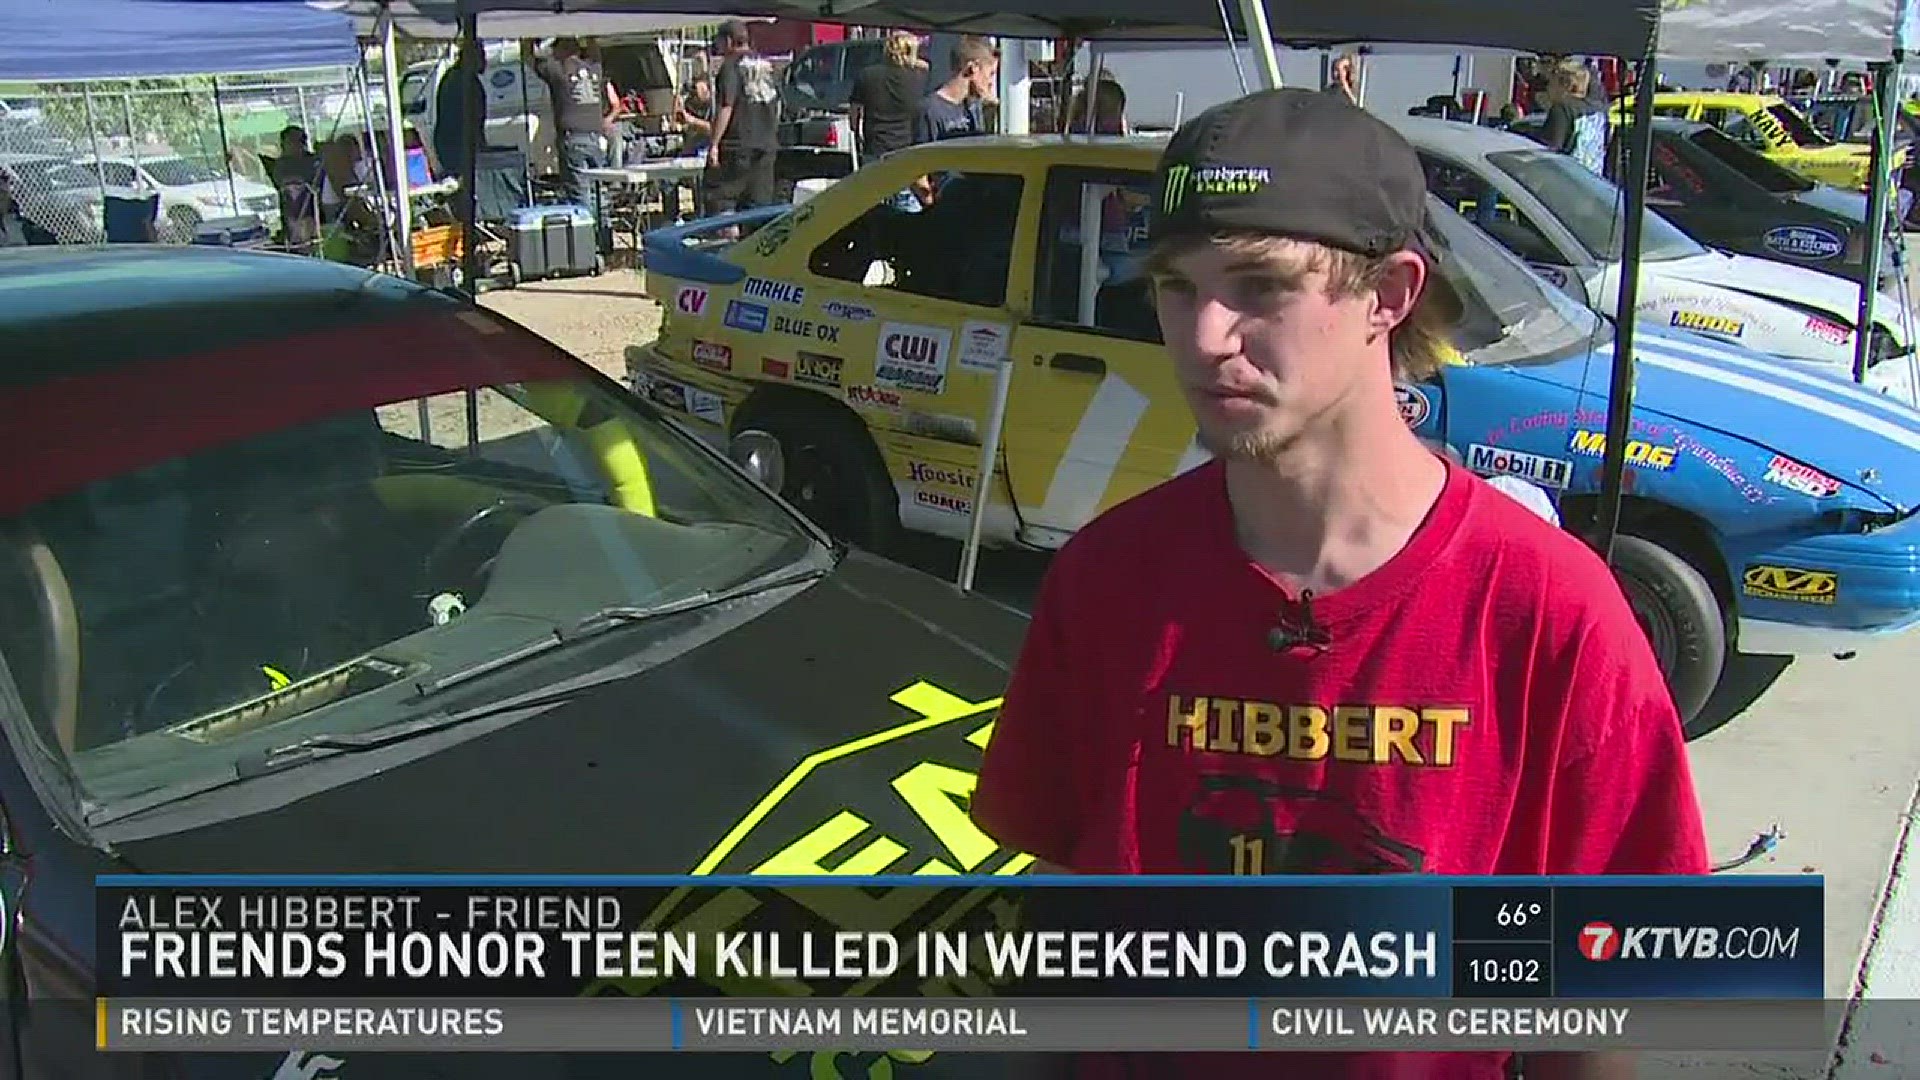 Friends honor teen killed in weekend crash.